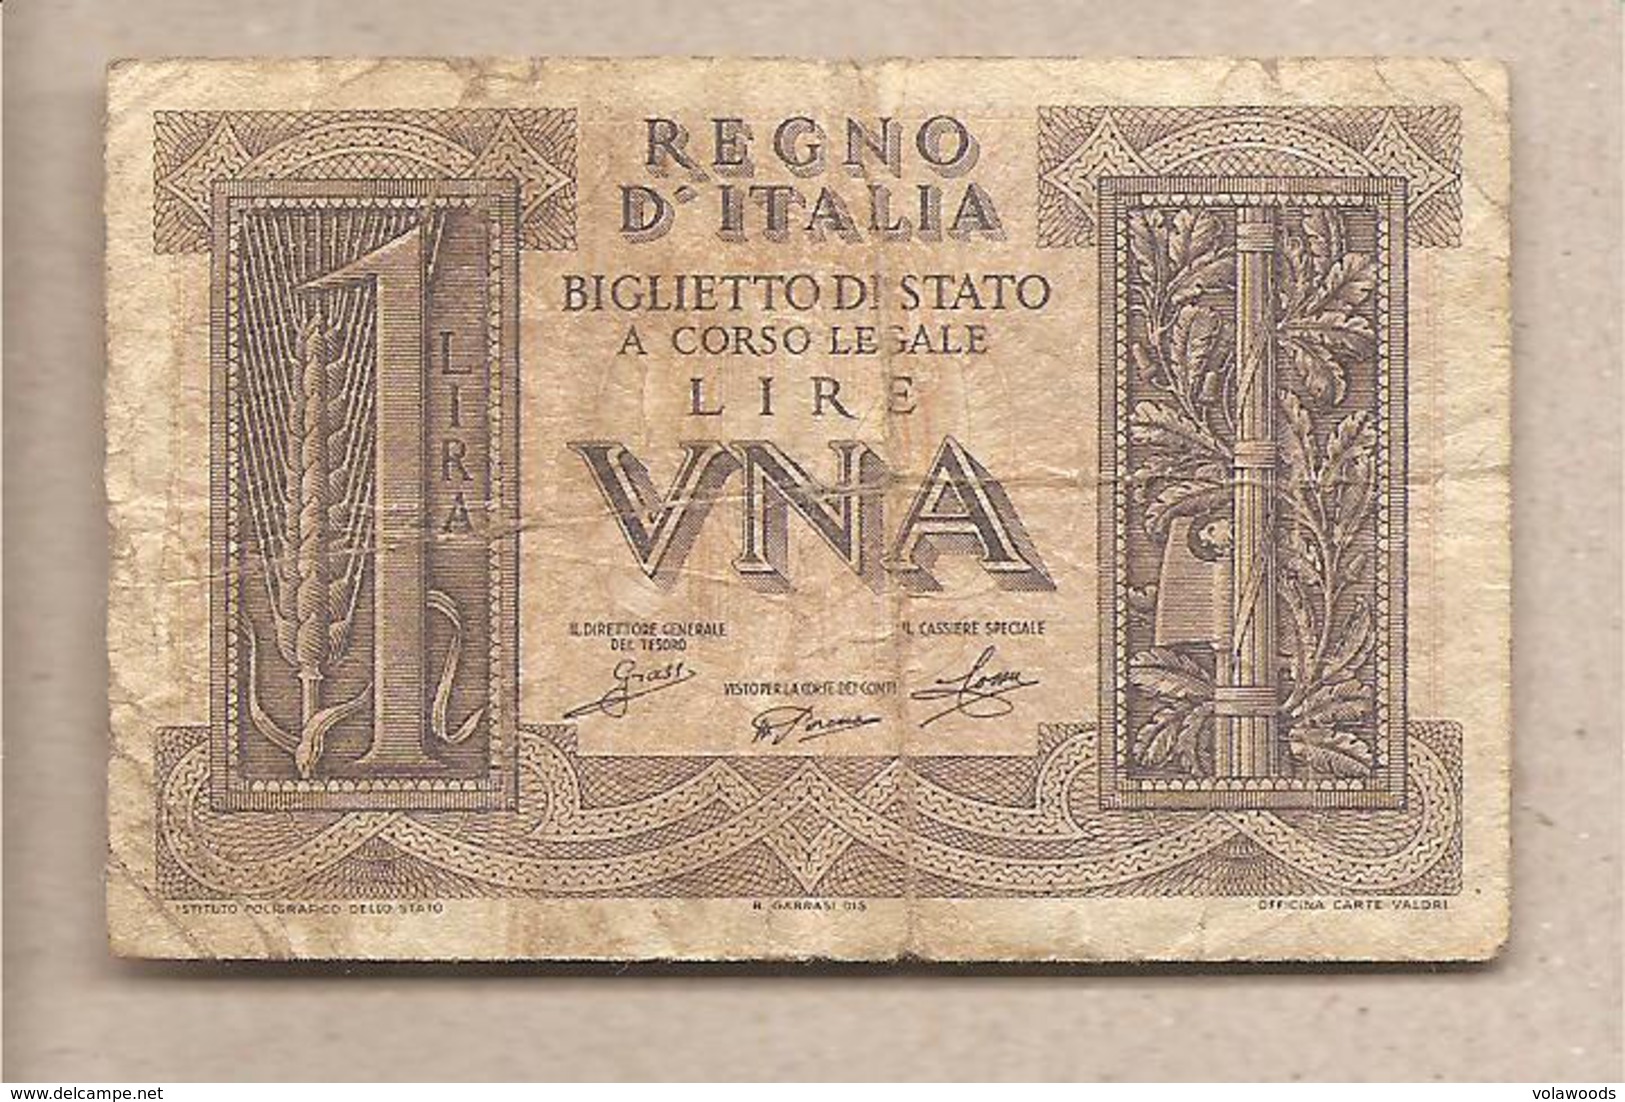 Italia - Banconota Circolata Da 1 Lira "Impero" P-26 - 1939 #17 - Regno D'Italia – 1 Lira